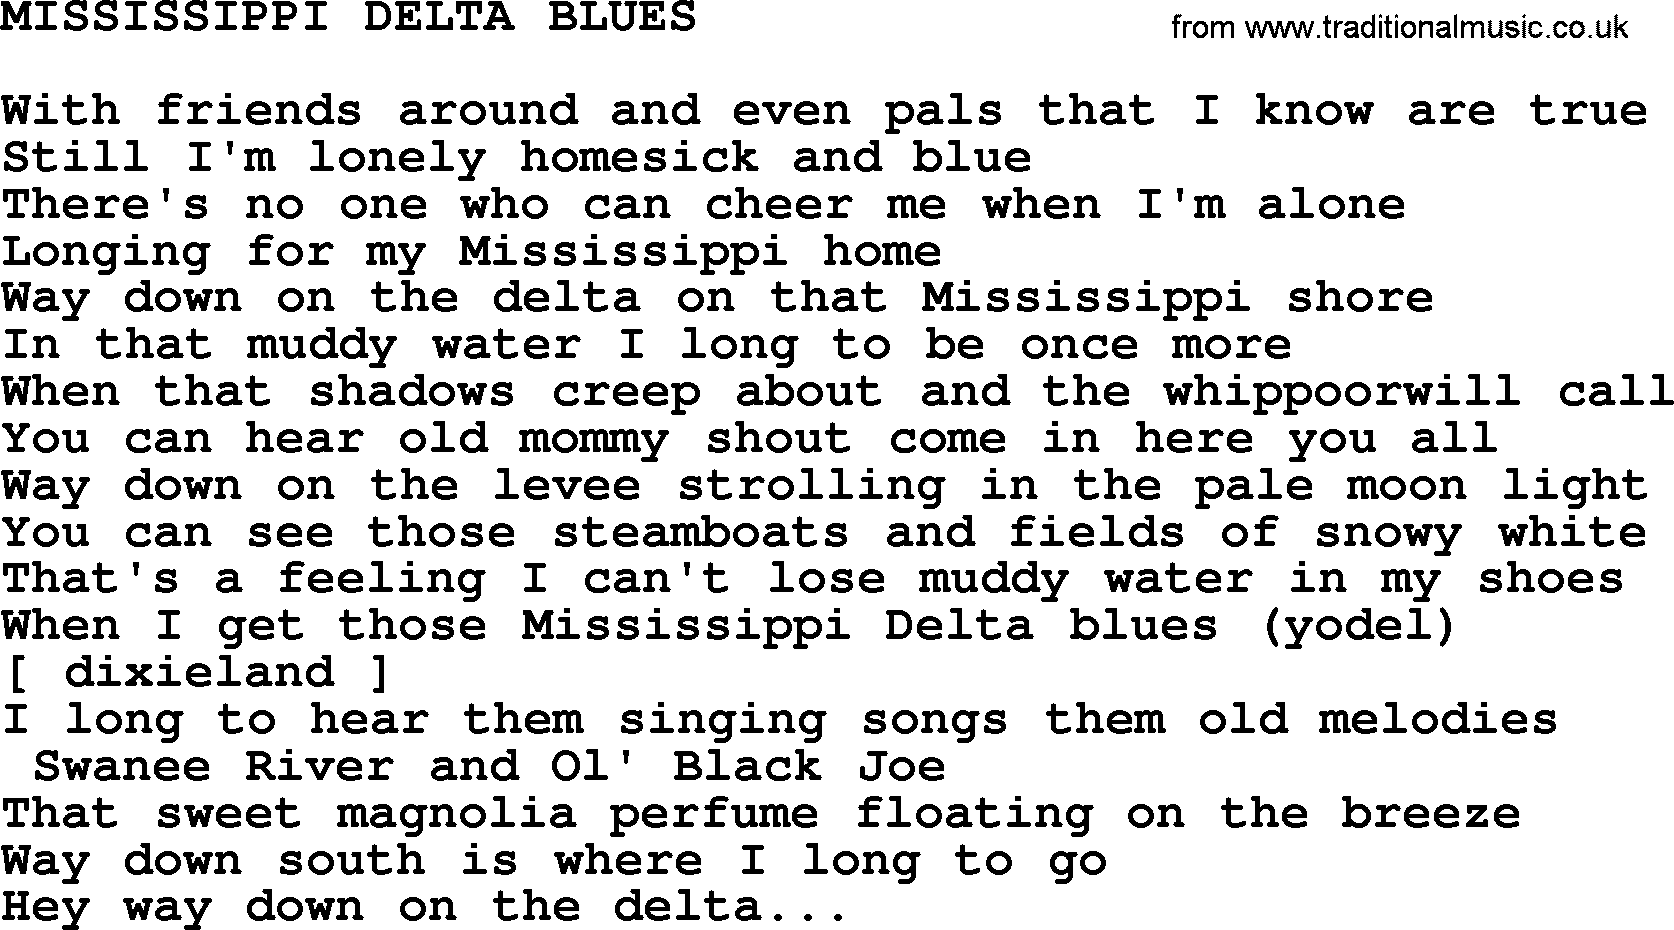 Merle Haggard song: Mississippi Delta Blues, lyrics.